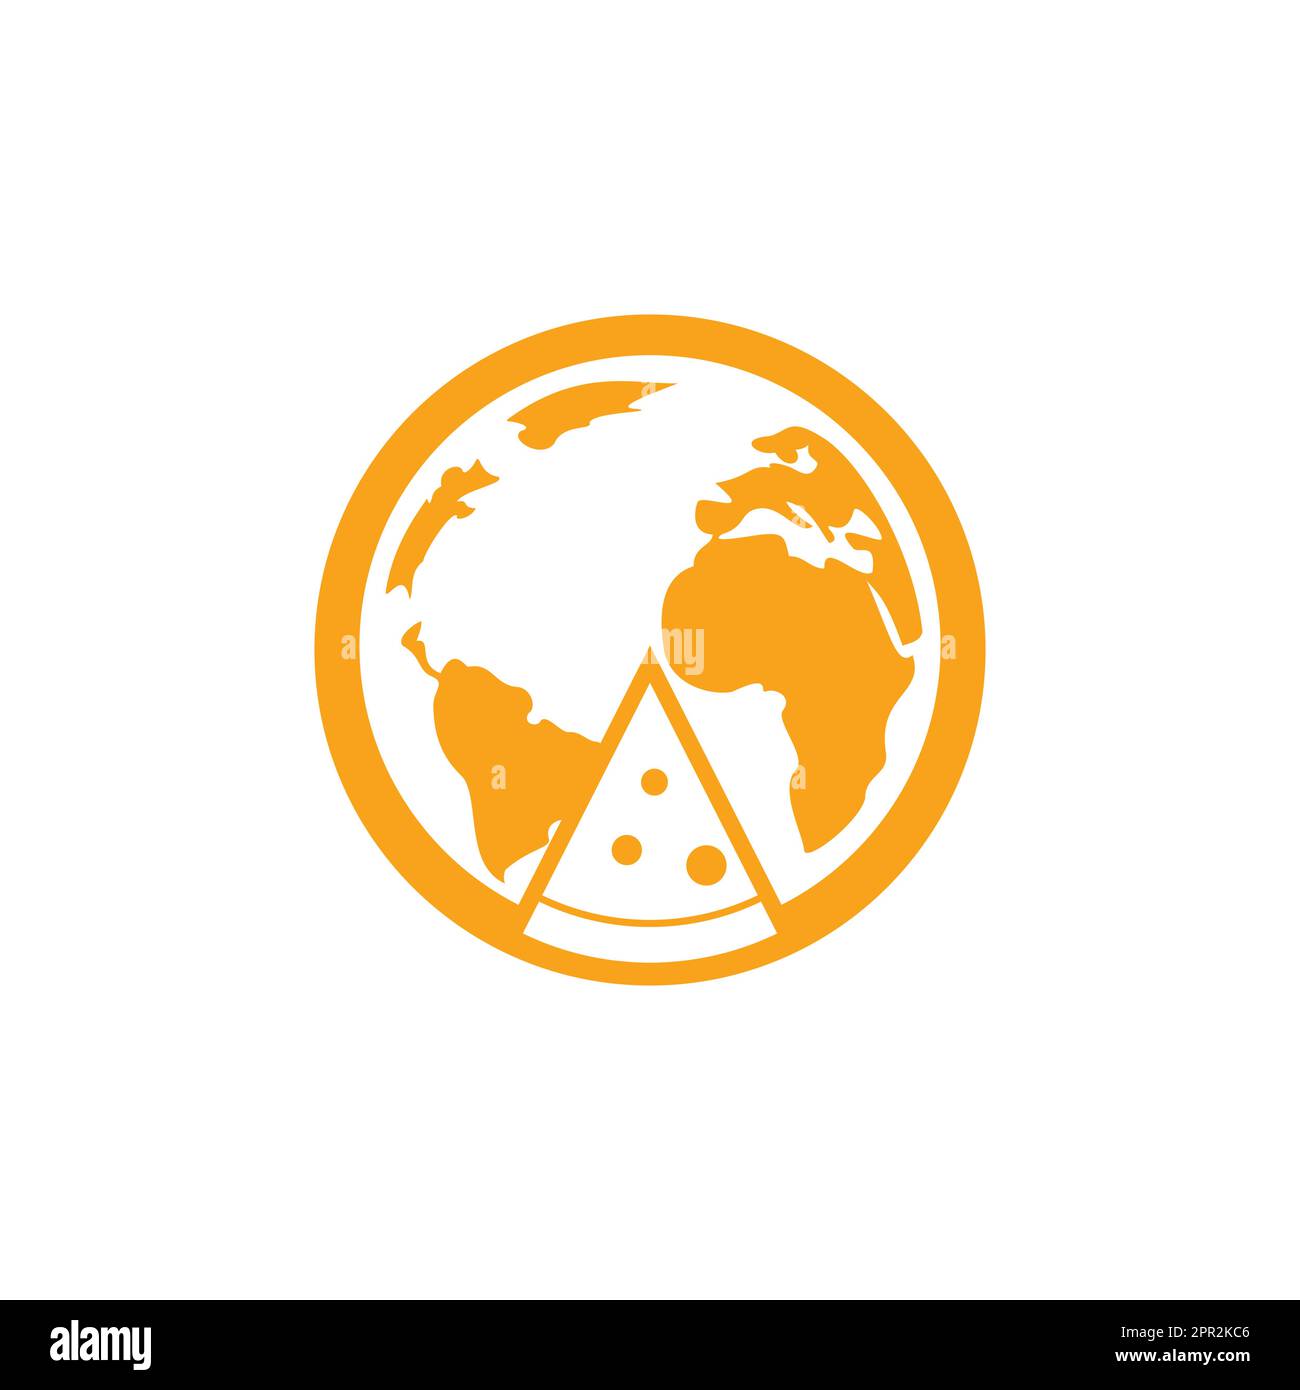 Disegno del logo vettoriale di Pizza Planet. Modello esclusivo di design del logotipo pizzeria. Illustrazione Vettoriale